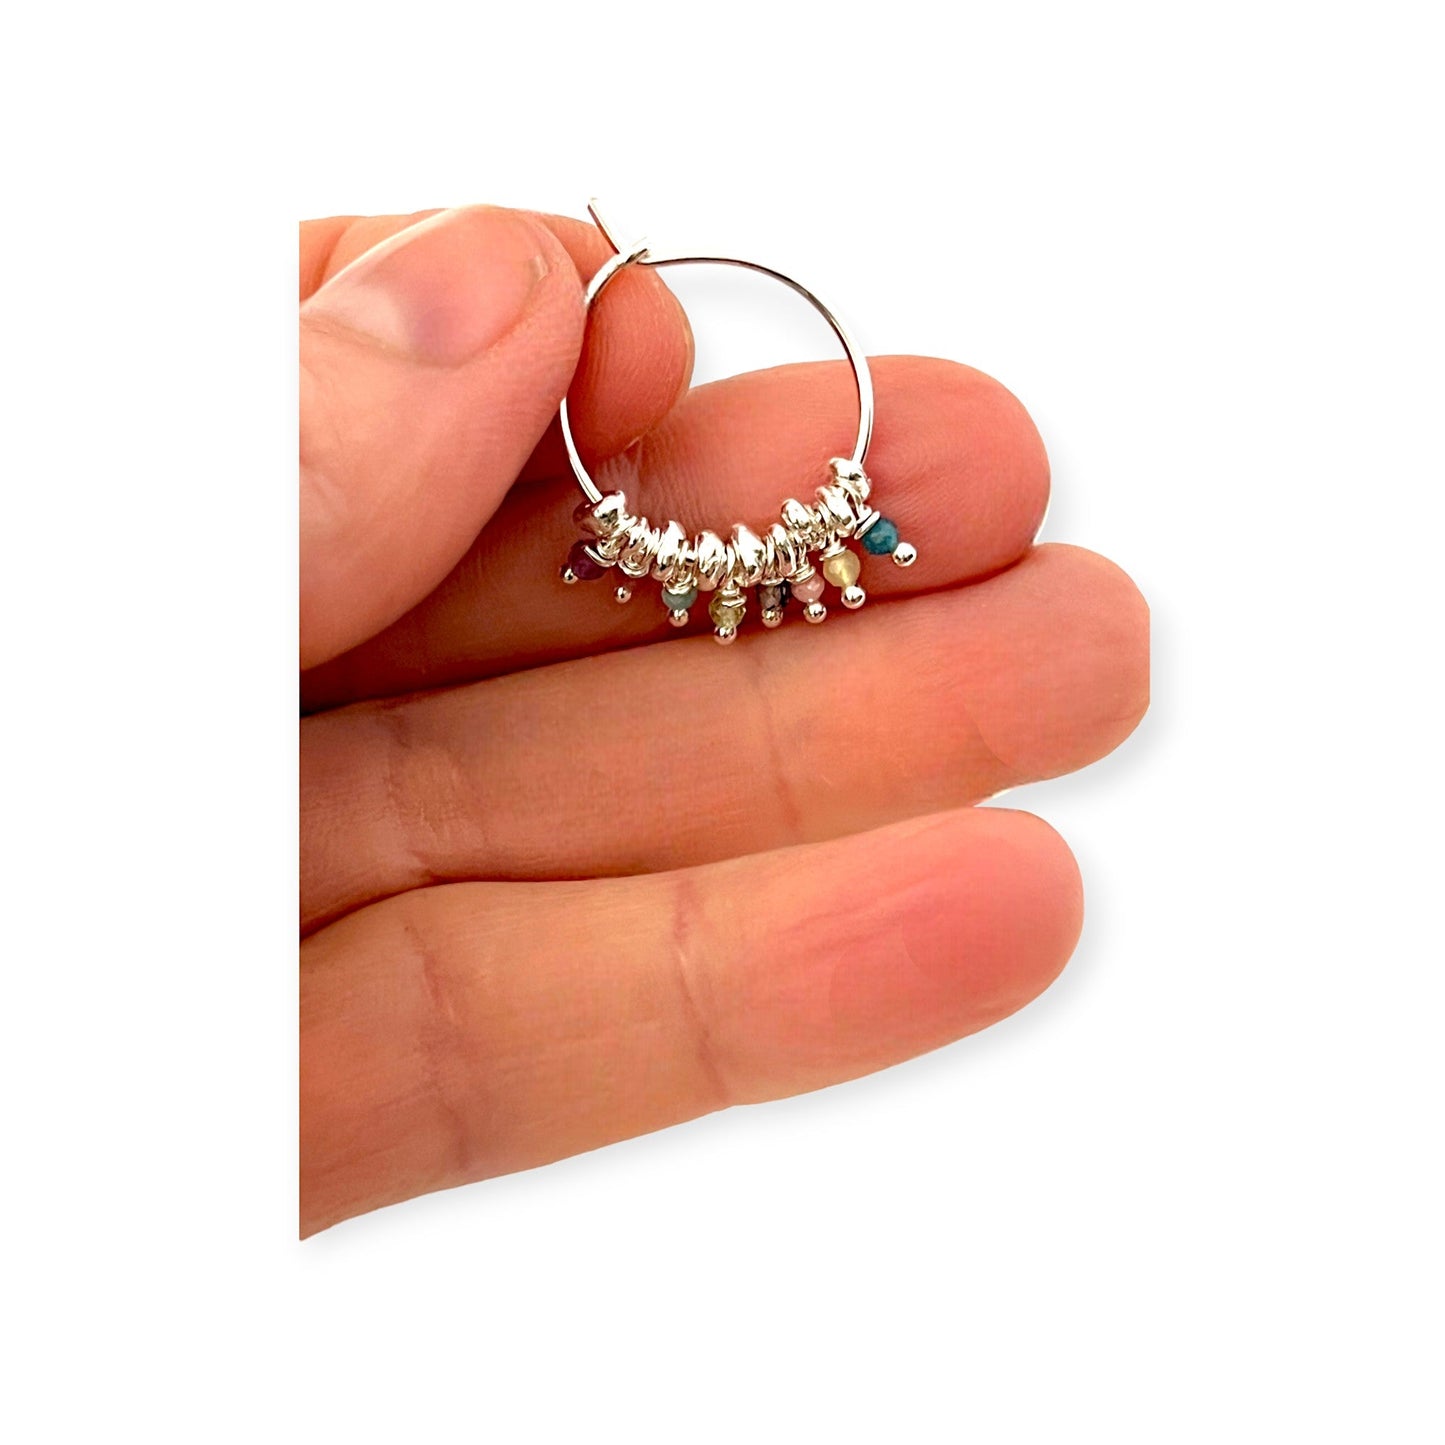 Delicate silver hoop earrings - Sundara Joon